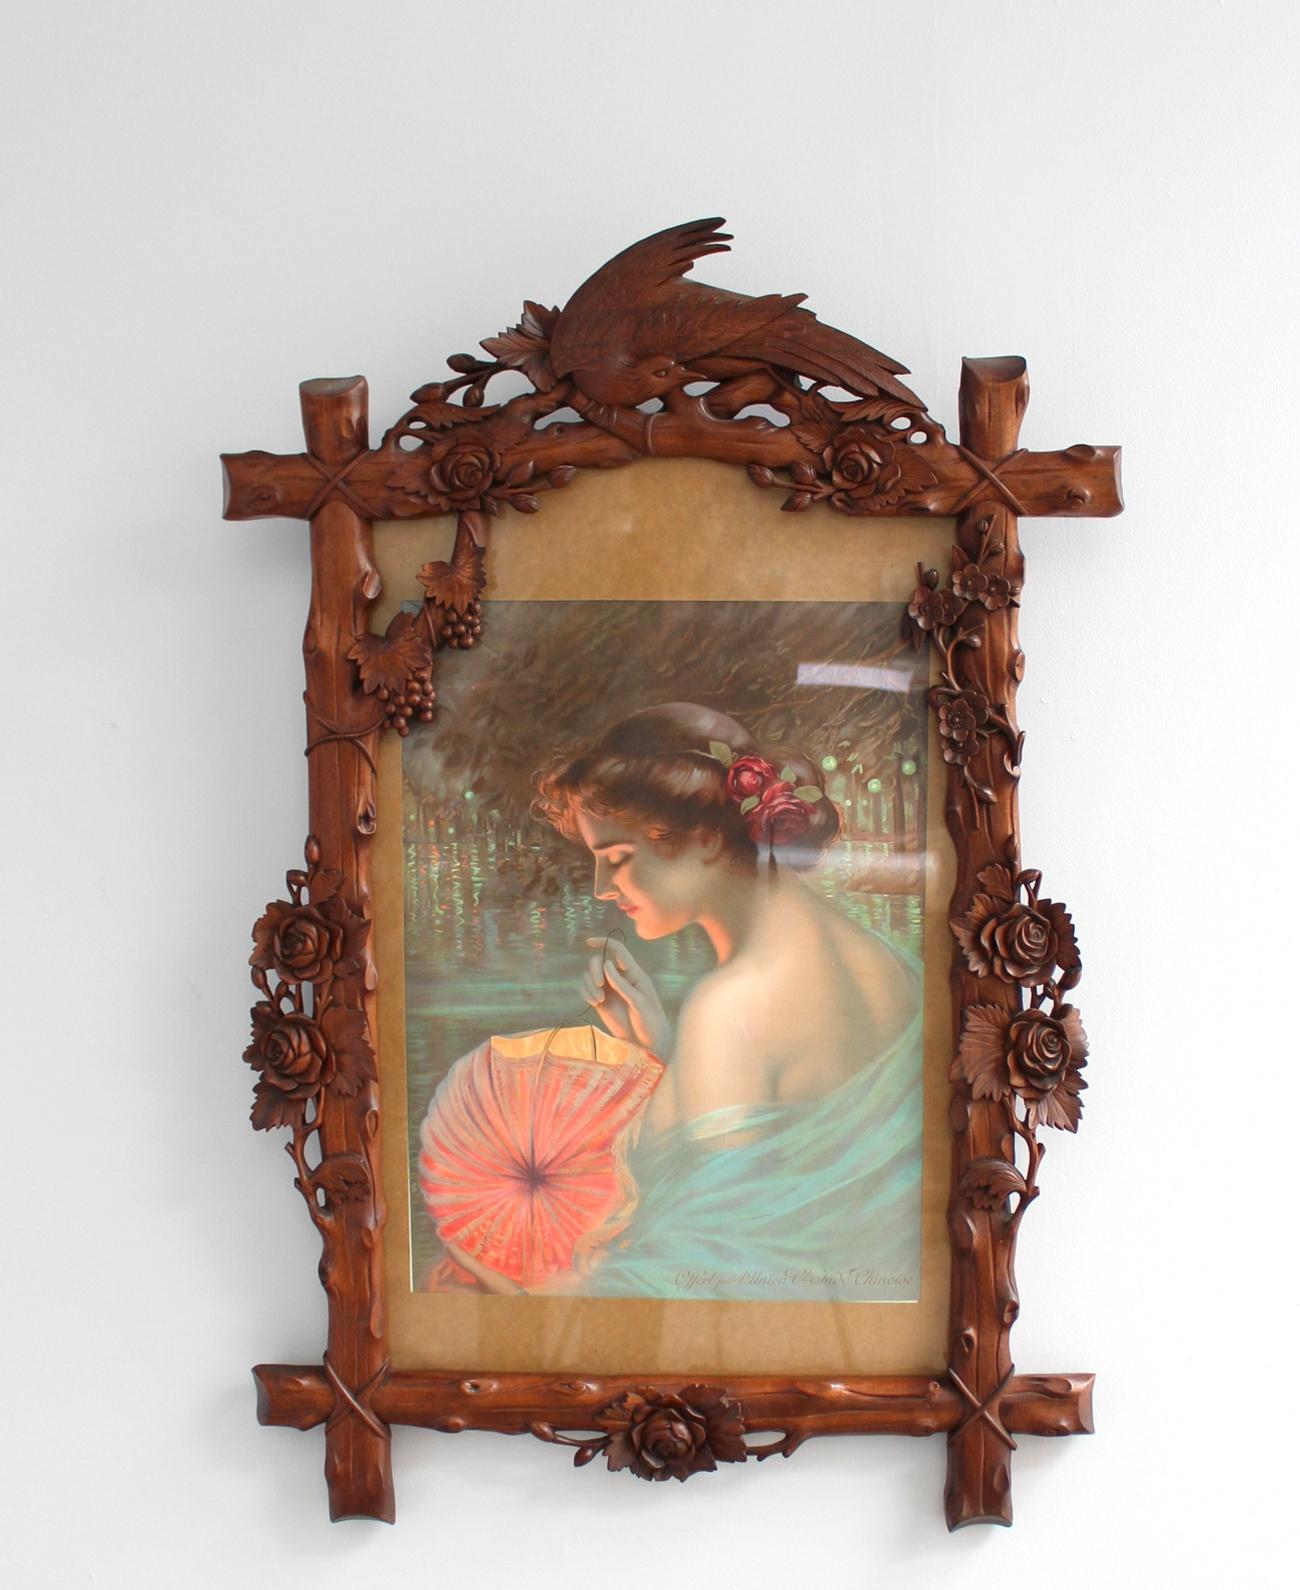 Un cadre en bois sculpté et teinté à la main de style Art nouveau français avec des fleurs, des raisins et un oiseau, encadrant une affiche originale 